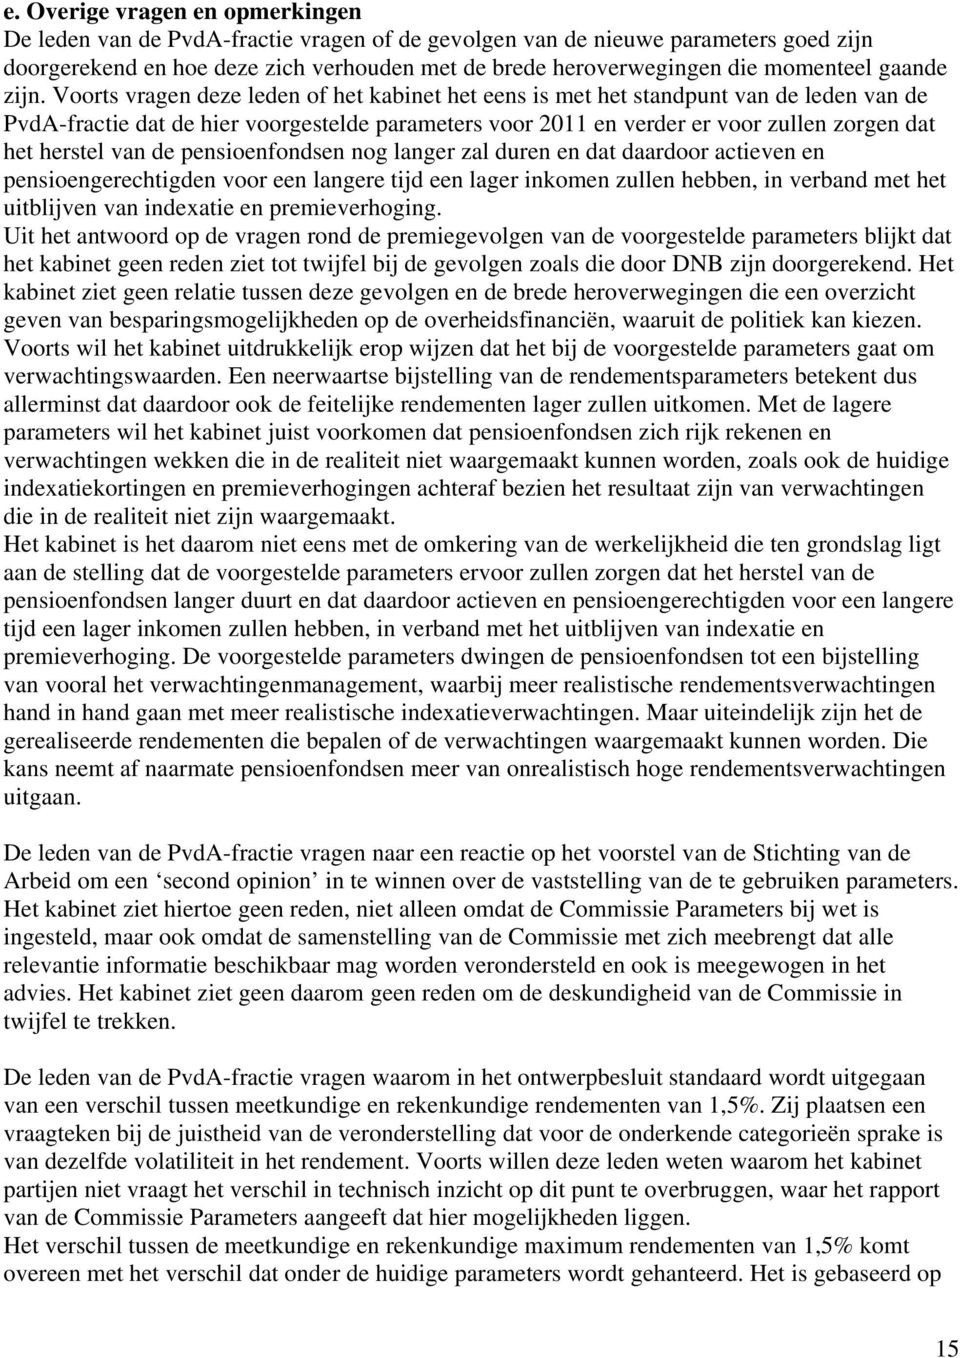 Voorts vragen deze leden of het kabinet het eens is met het standpunt van de leden van de PvdA-fractie dat de hier voorgestelde parameters voor 2011 en verder er voor zullen zorgen dat het herstel